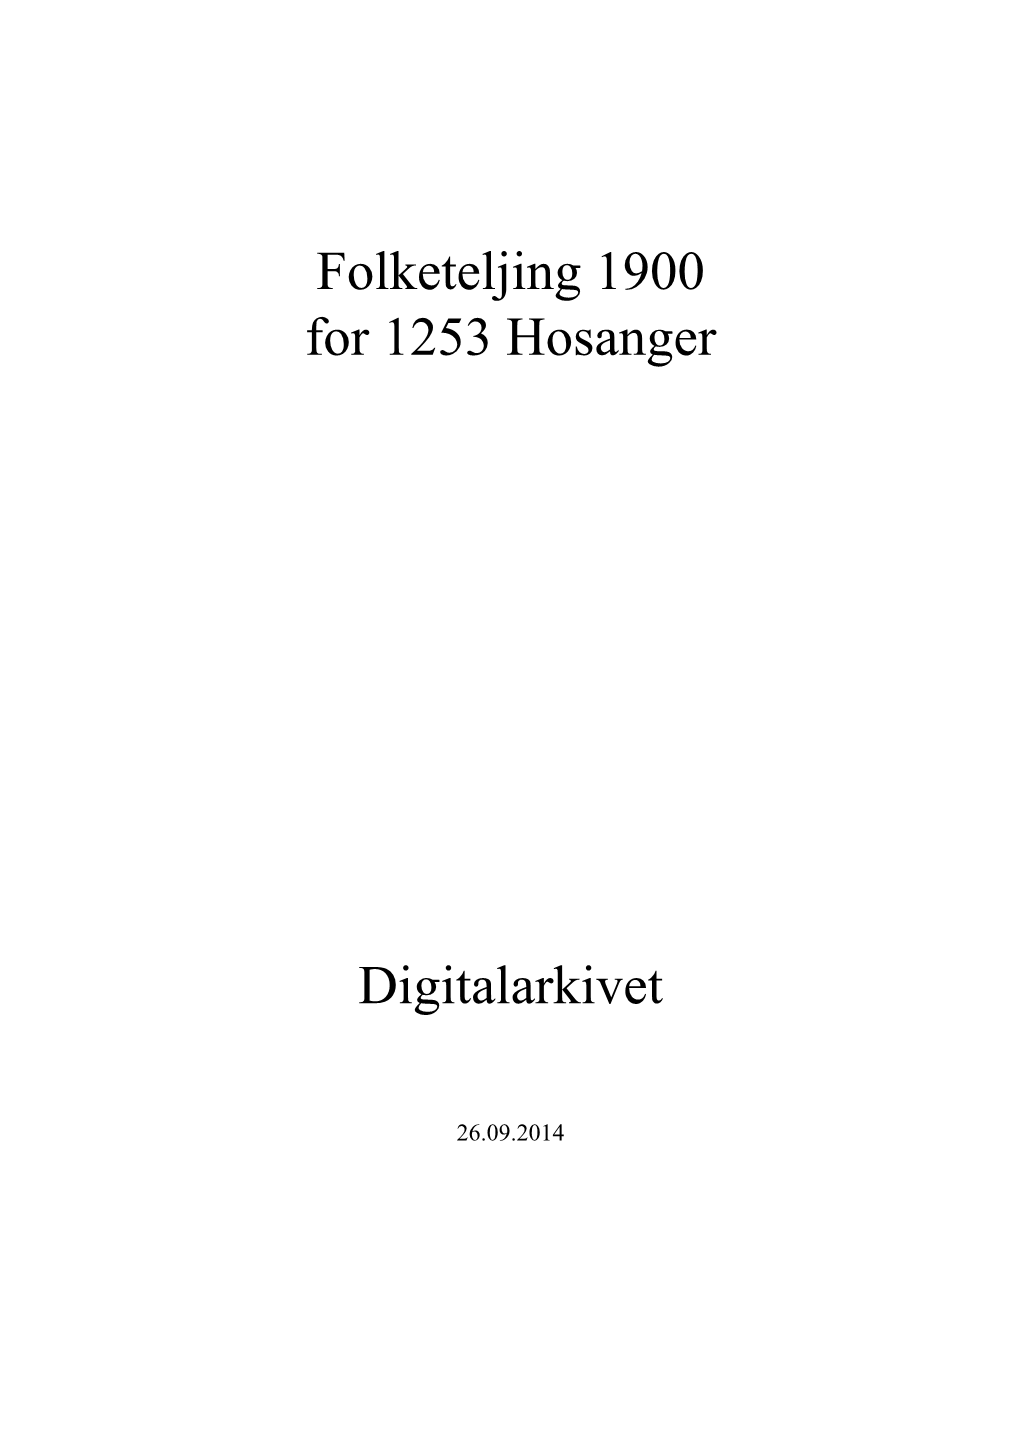 Folketeljing 1900 for 1253 Hosanger Digitalarkivet